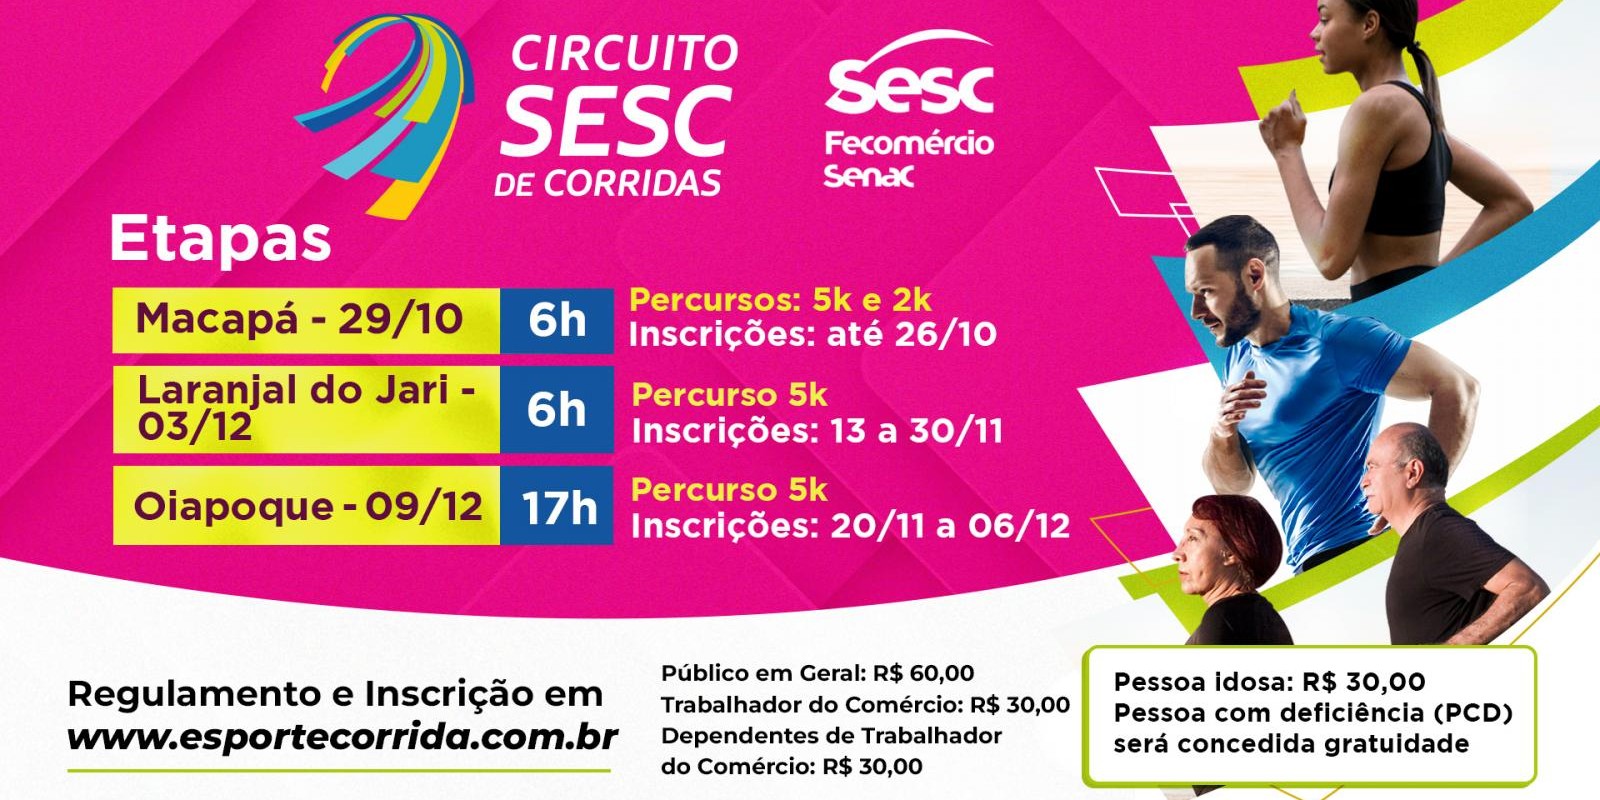 Viaje no Carnaval 2023 com o Sesc PR - Sesc Paraná